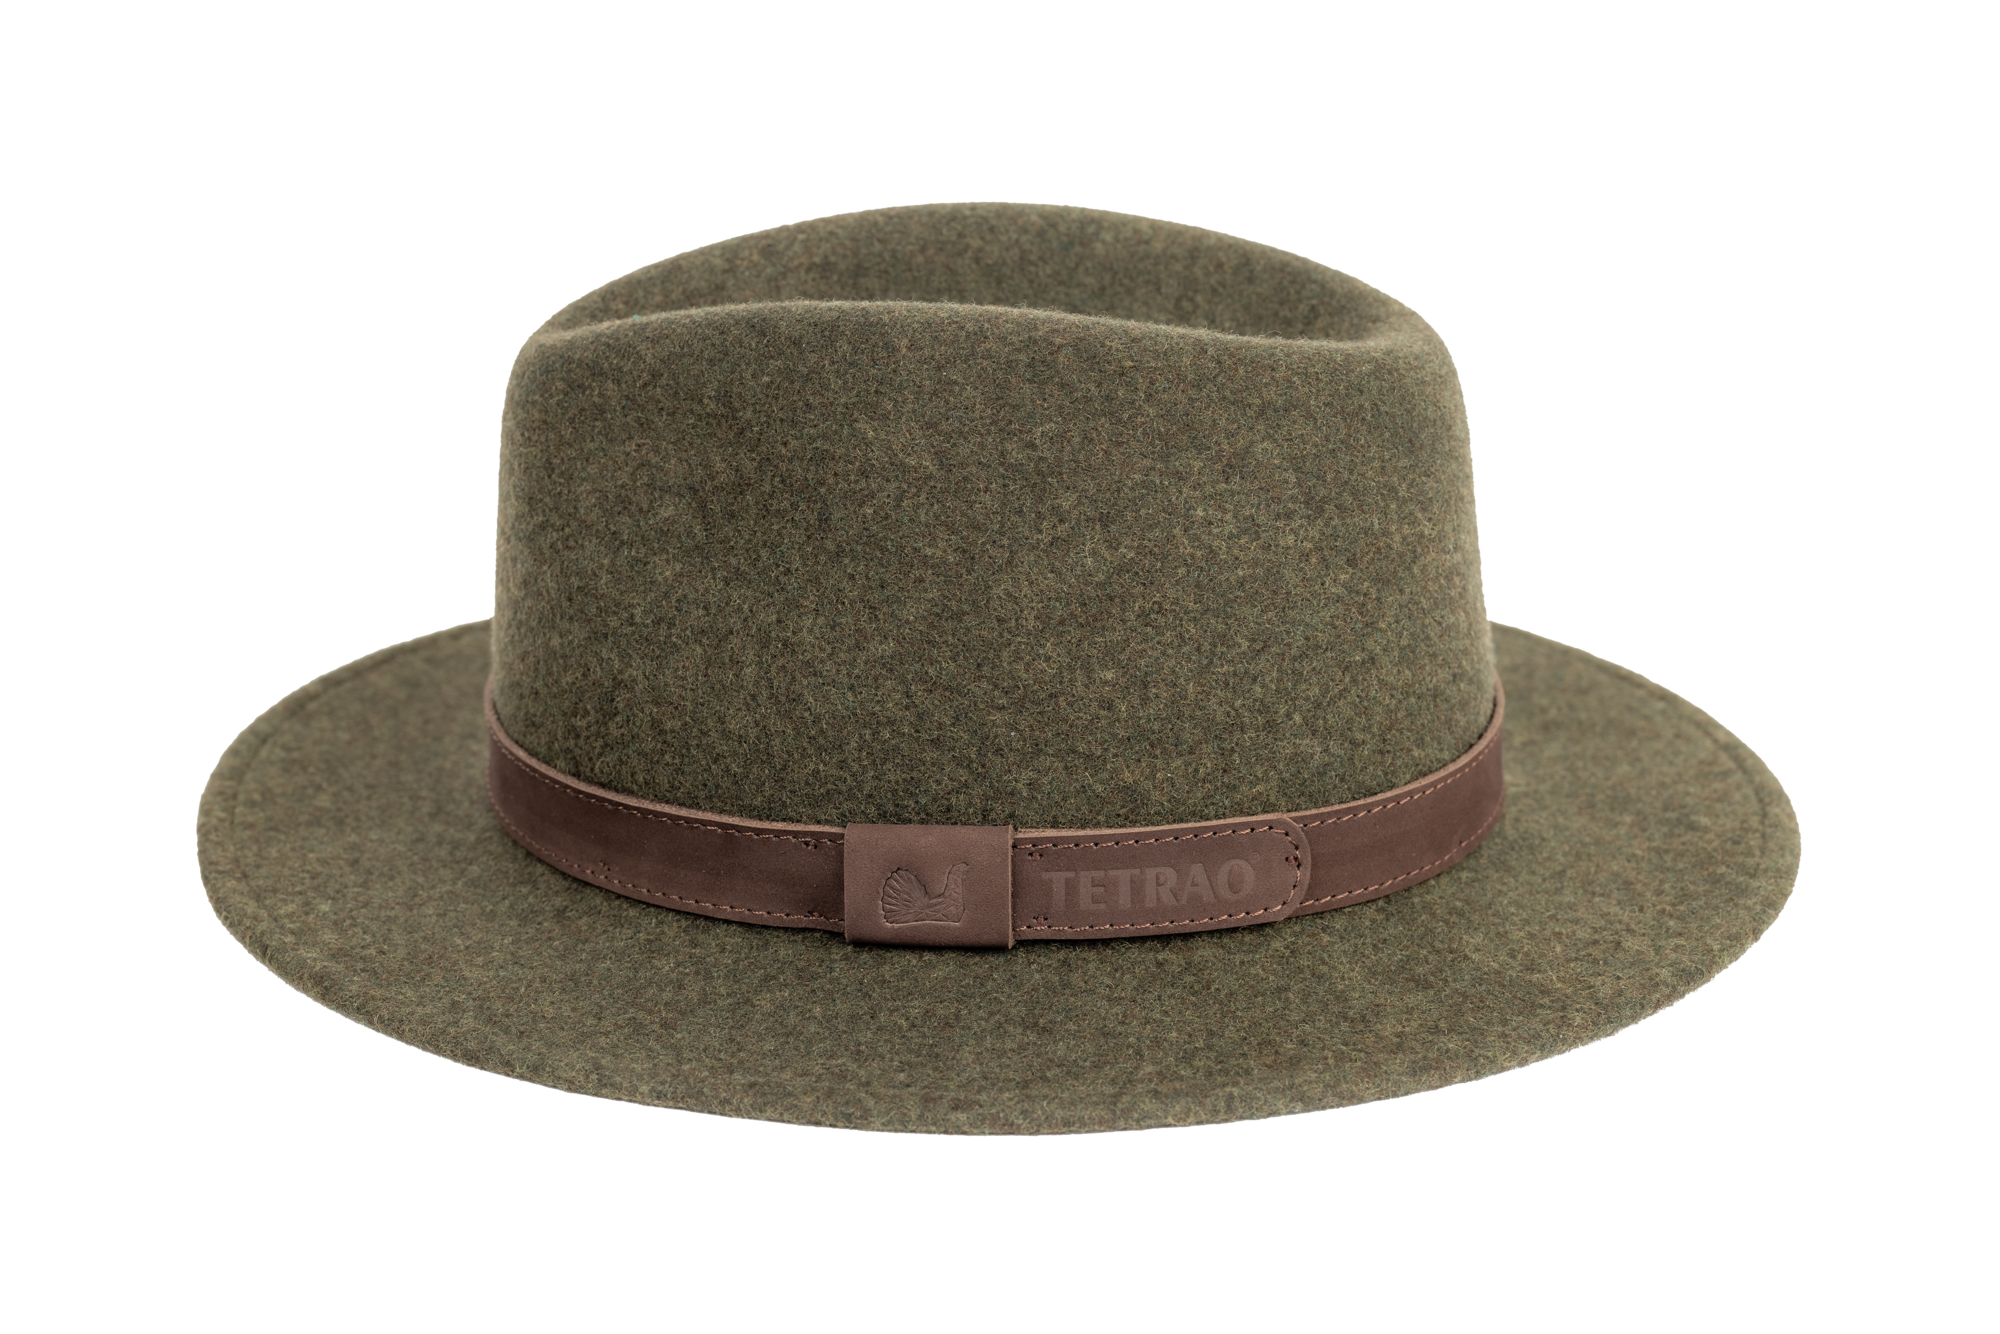 Poľovnícky klobúk TETRAO melanž UNI - zelený  56